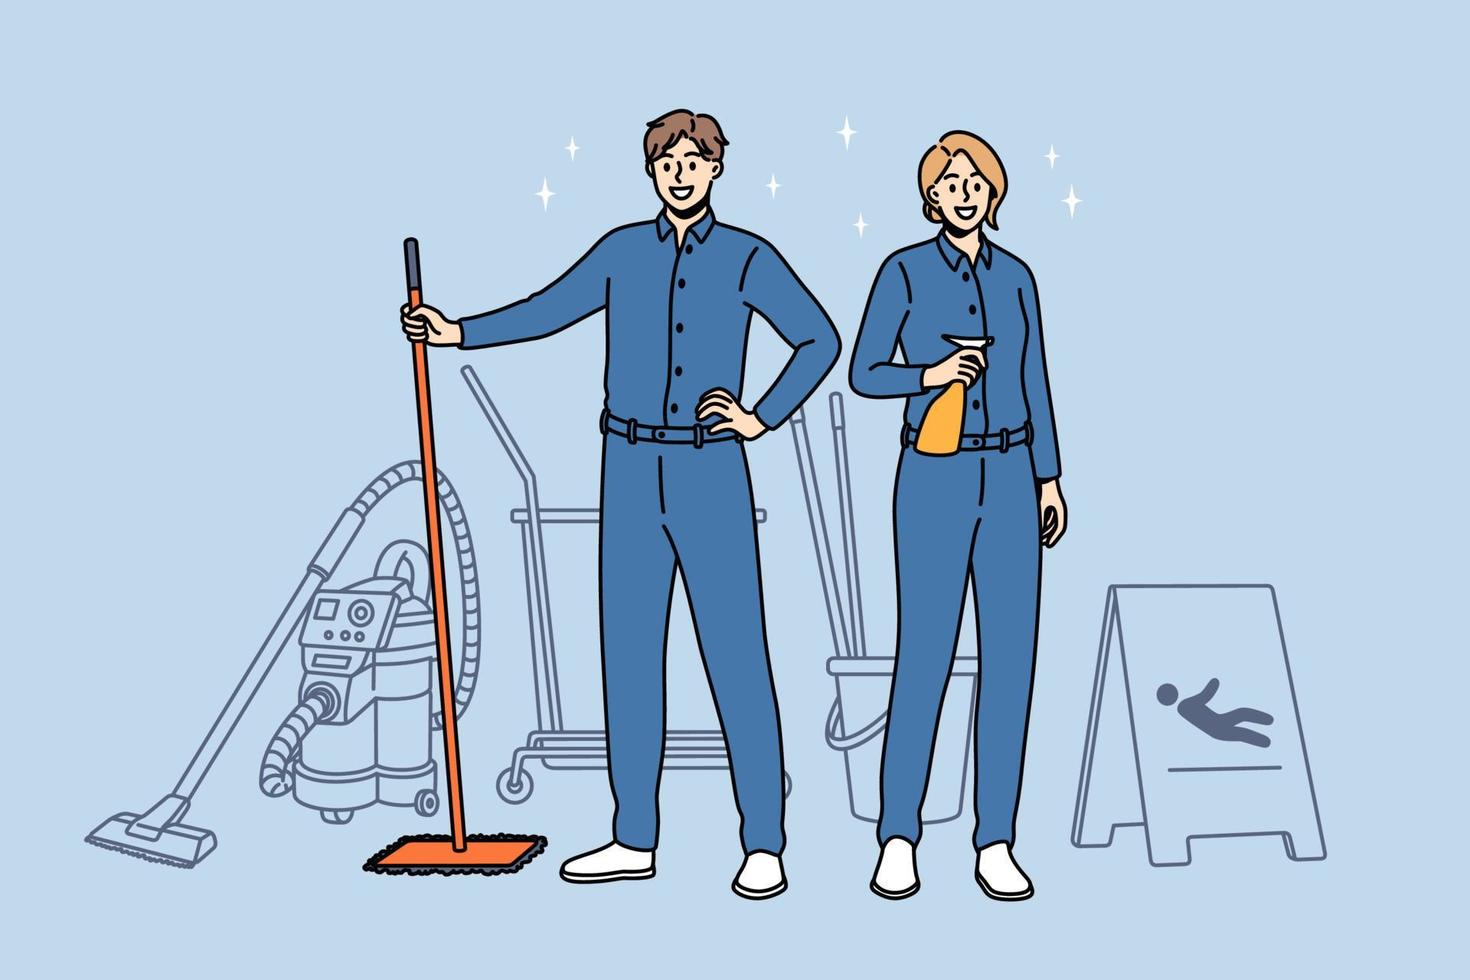 concept de travaux ménagers et de nettoyage. jeune femme souriante et nettoyeurs d'hommes en uniforme bleu debout tenant des outils pour nettoyer dans les mains illustration vectorielle vecteur